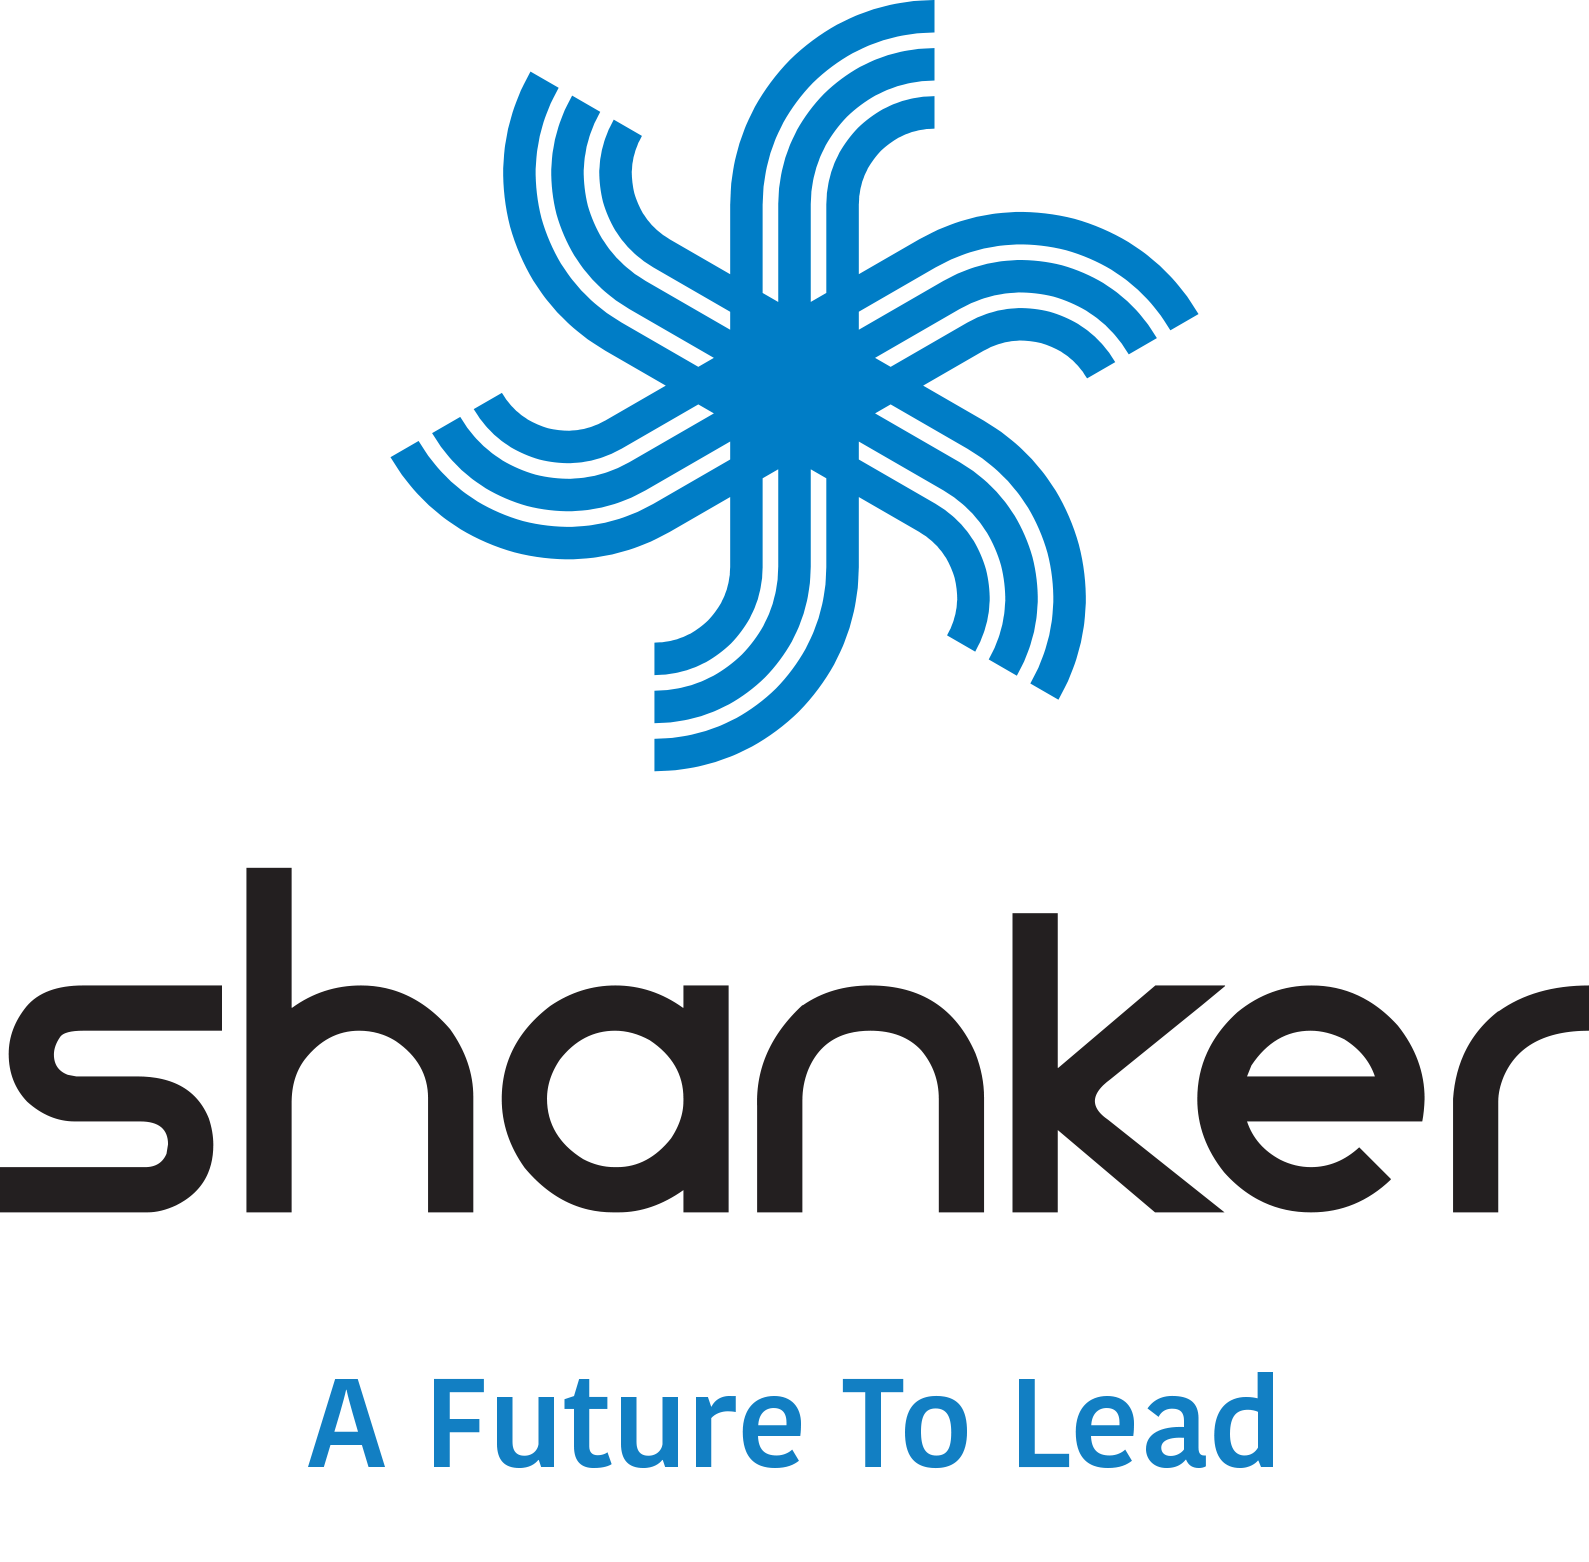 Shankar Group